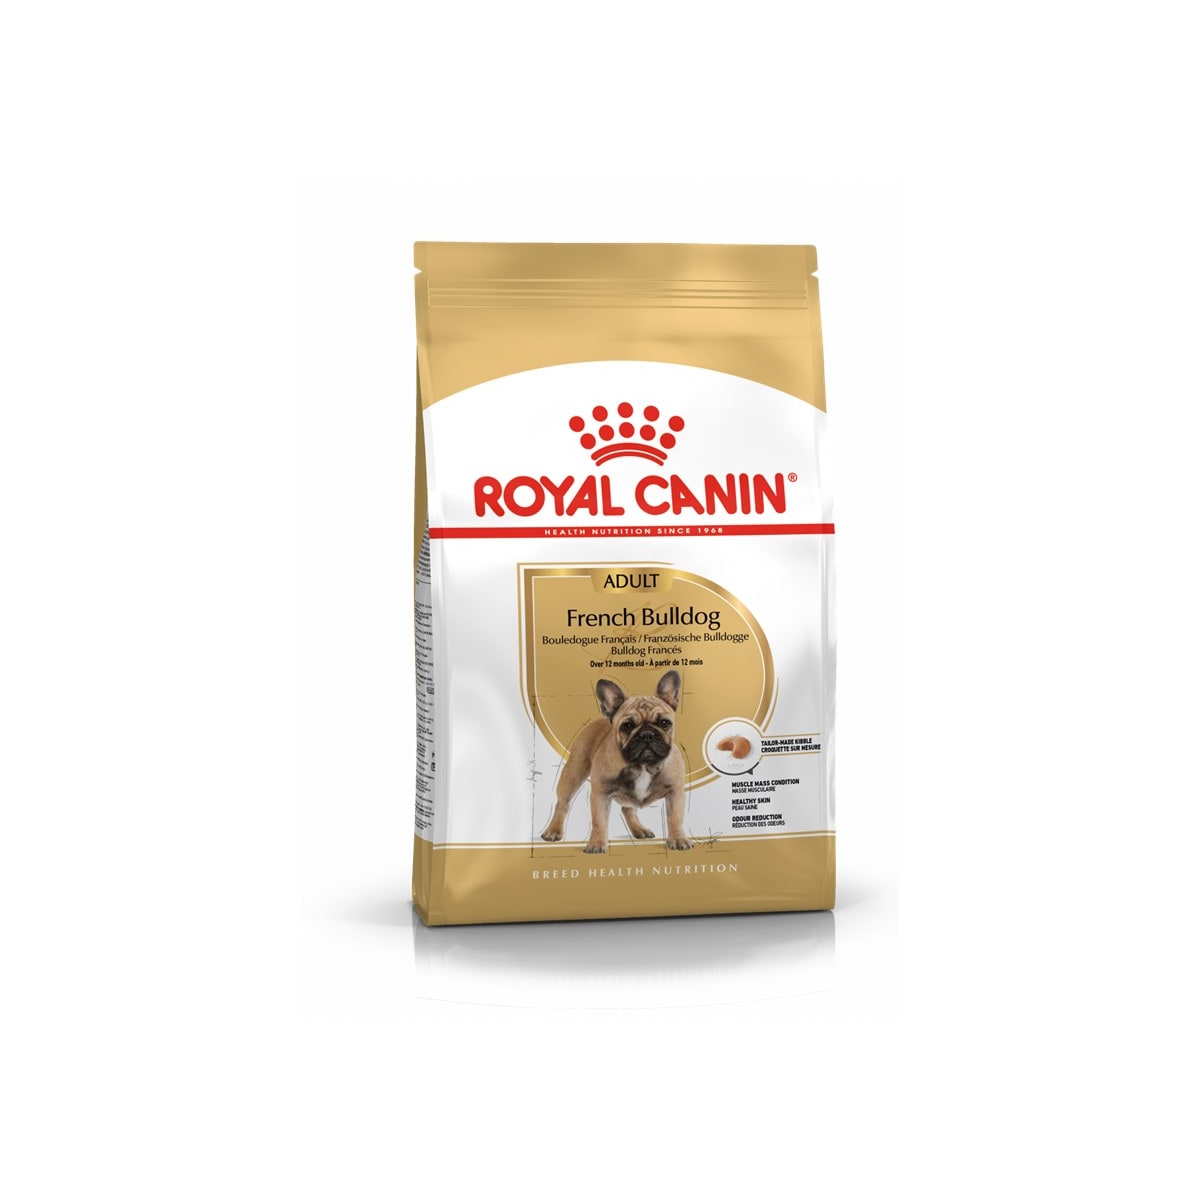 Royal Canin โรยัล คานิน อาหารสุนัขแบบเม็ด สำหรับสุนัขโตสายพันธุ์เฟรนช์ บูลด็อก